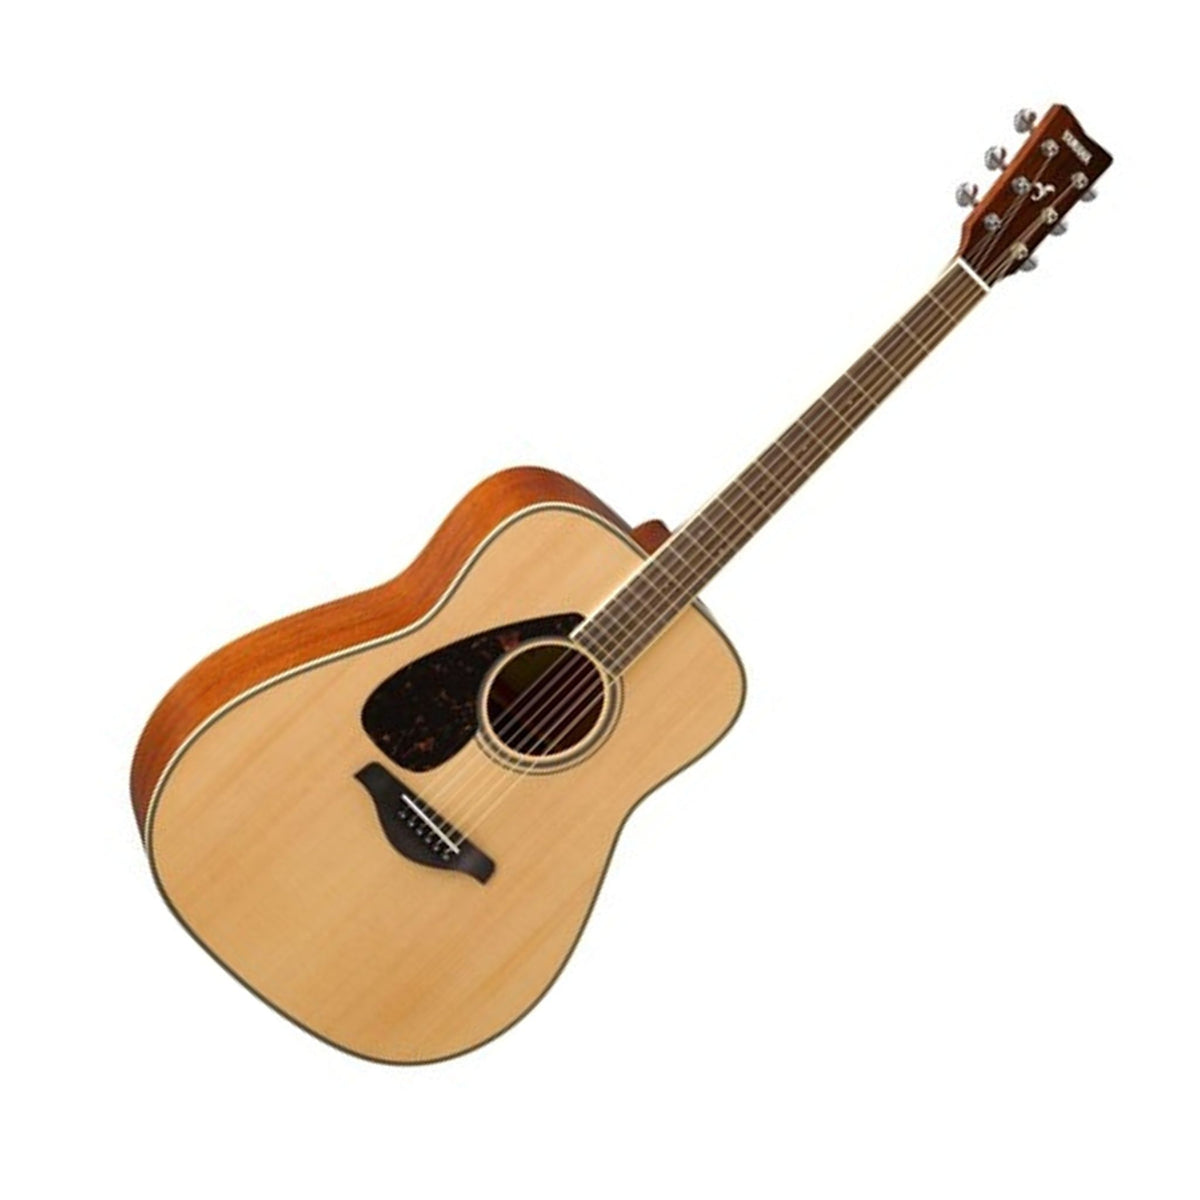 Yamaha FG820 Acoustic Steel String Guitar Left Handed Natural